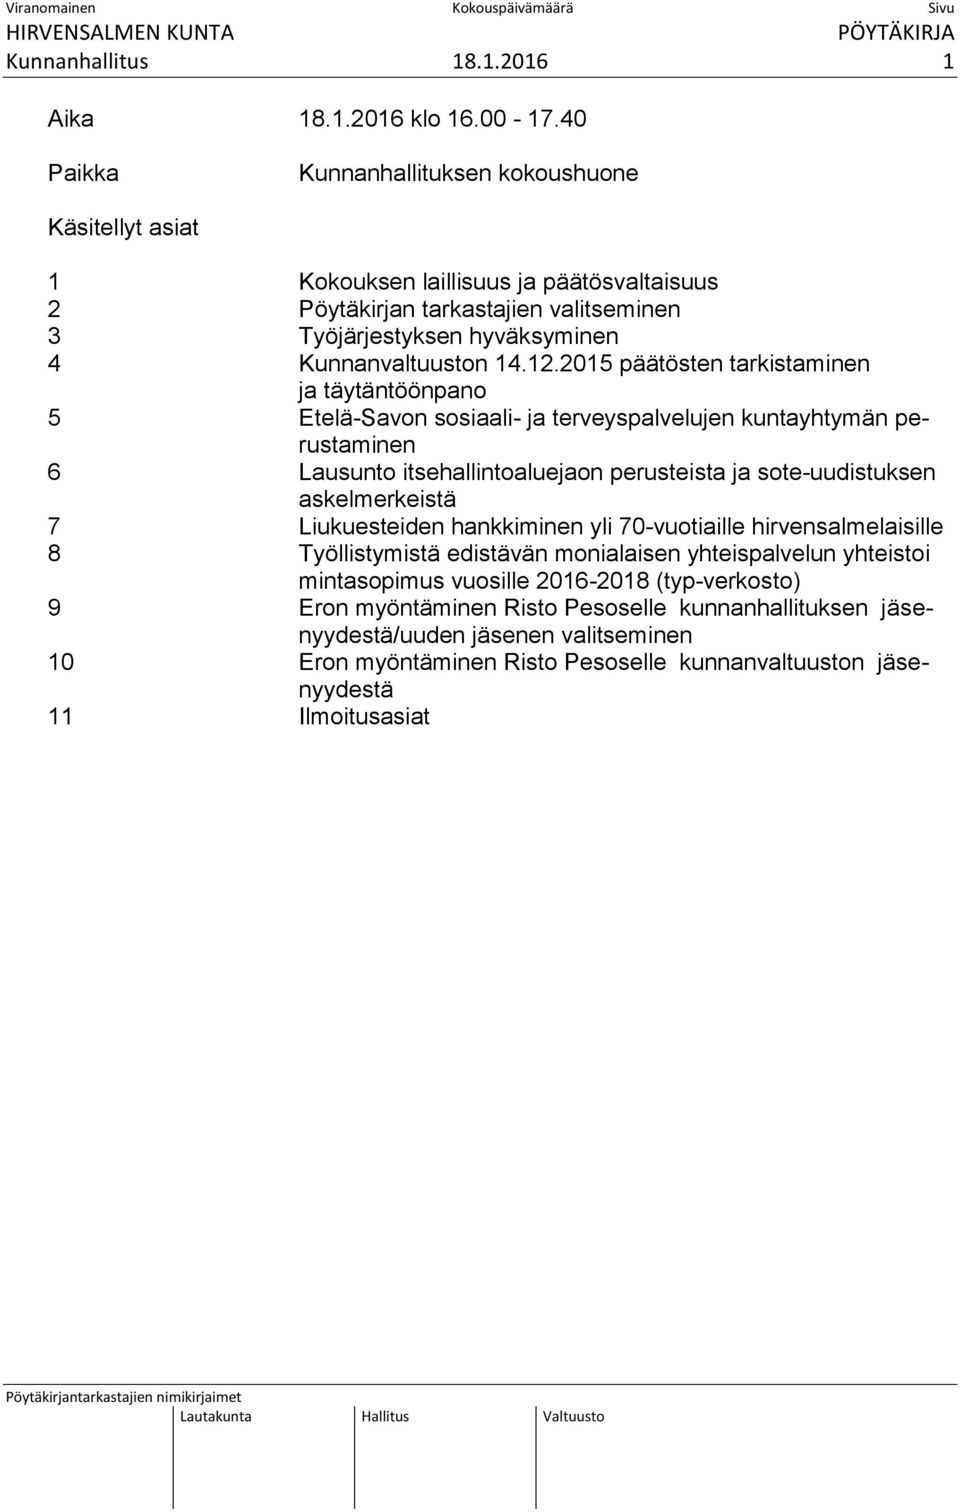 2015 päätösten tarkistaminen ja täytäntöönpano 5 Etelä-Savon sosiaali- ja terveyspalvelujen kuntayhtymän perustaminen 6 Lausunto itsehallintoaluejaon perusteista ja sote-uudistuksen askelmerkeistä 7